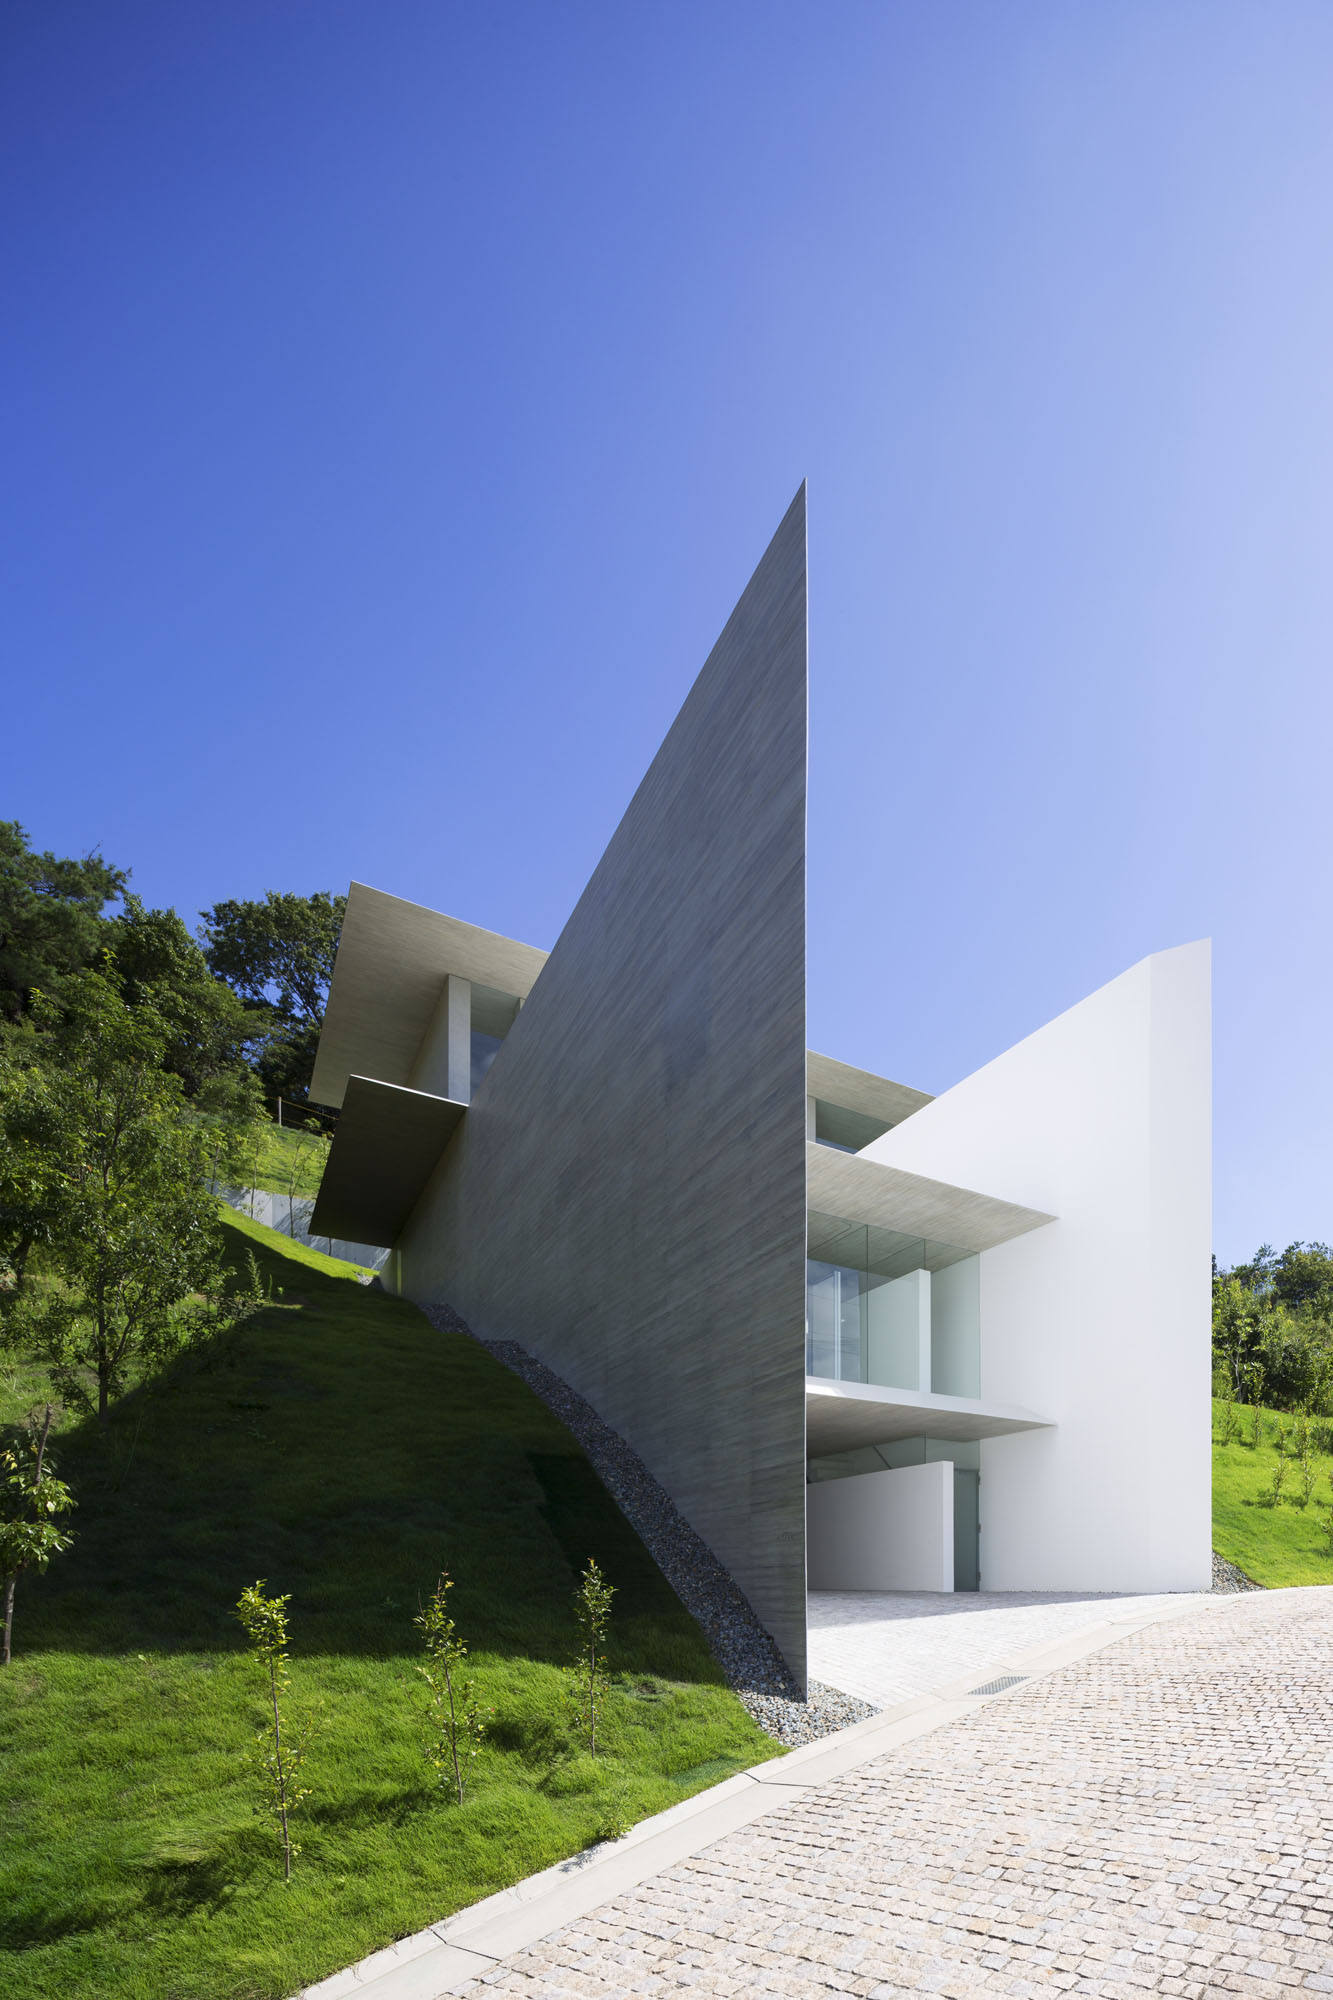 YA-House by Kubota Architect Atelier